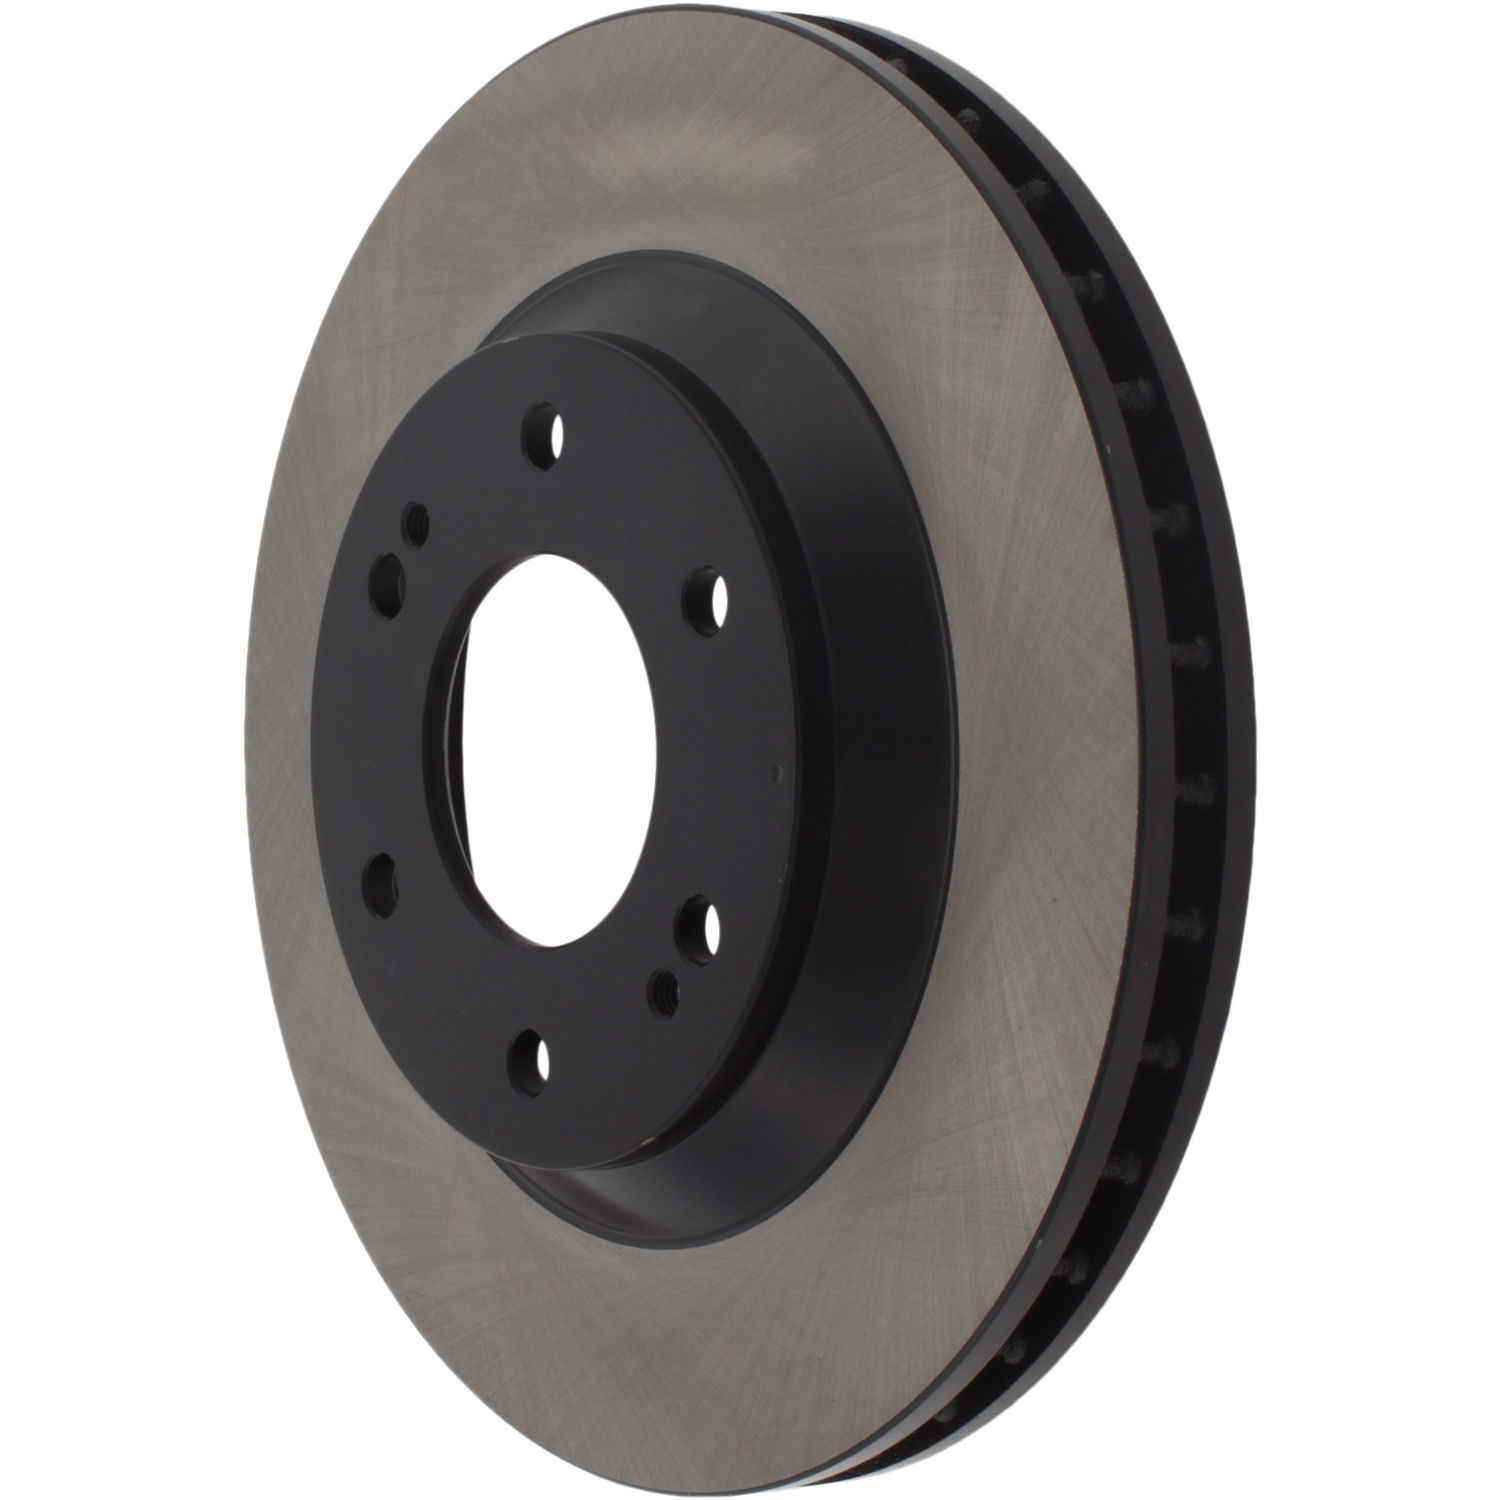 CENTRIC PARTS - High Carbon Alloy Brake Disc (Front) - CEC 125.66051